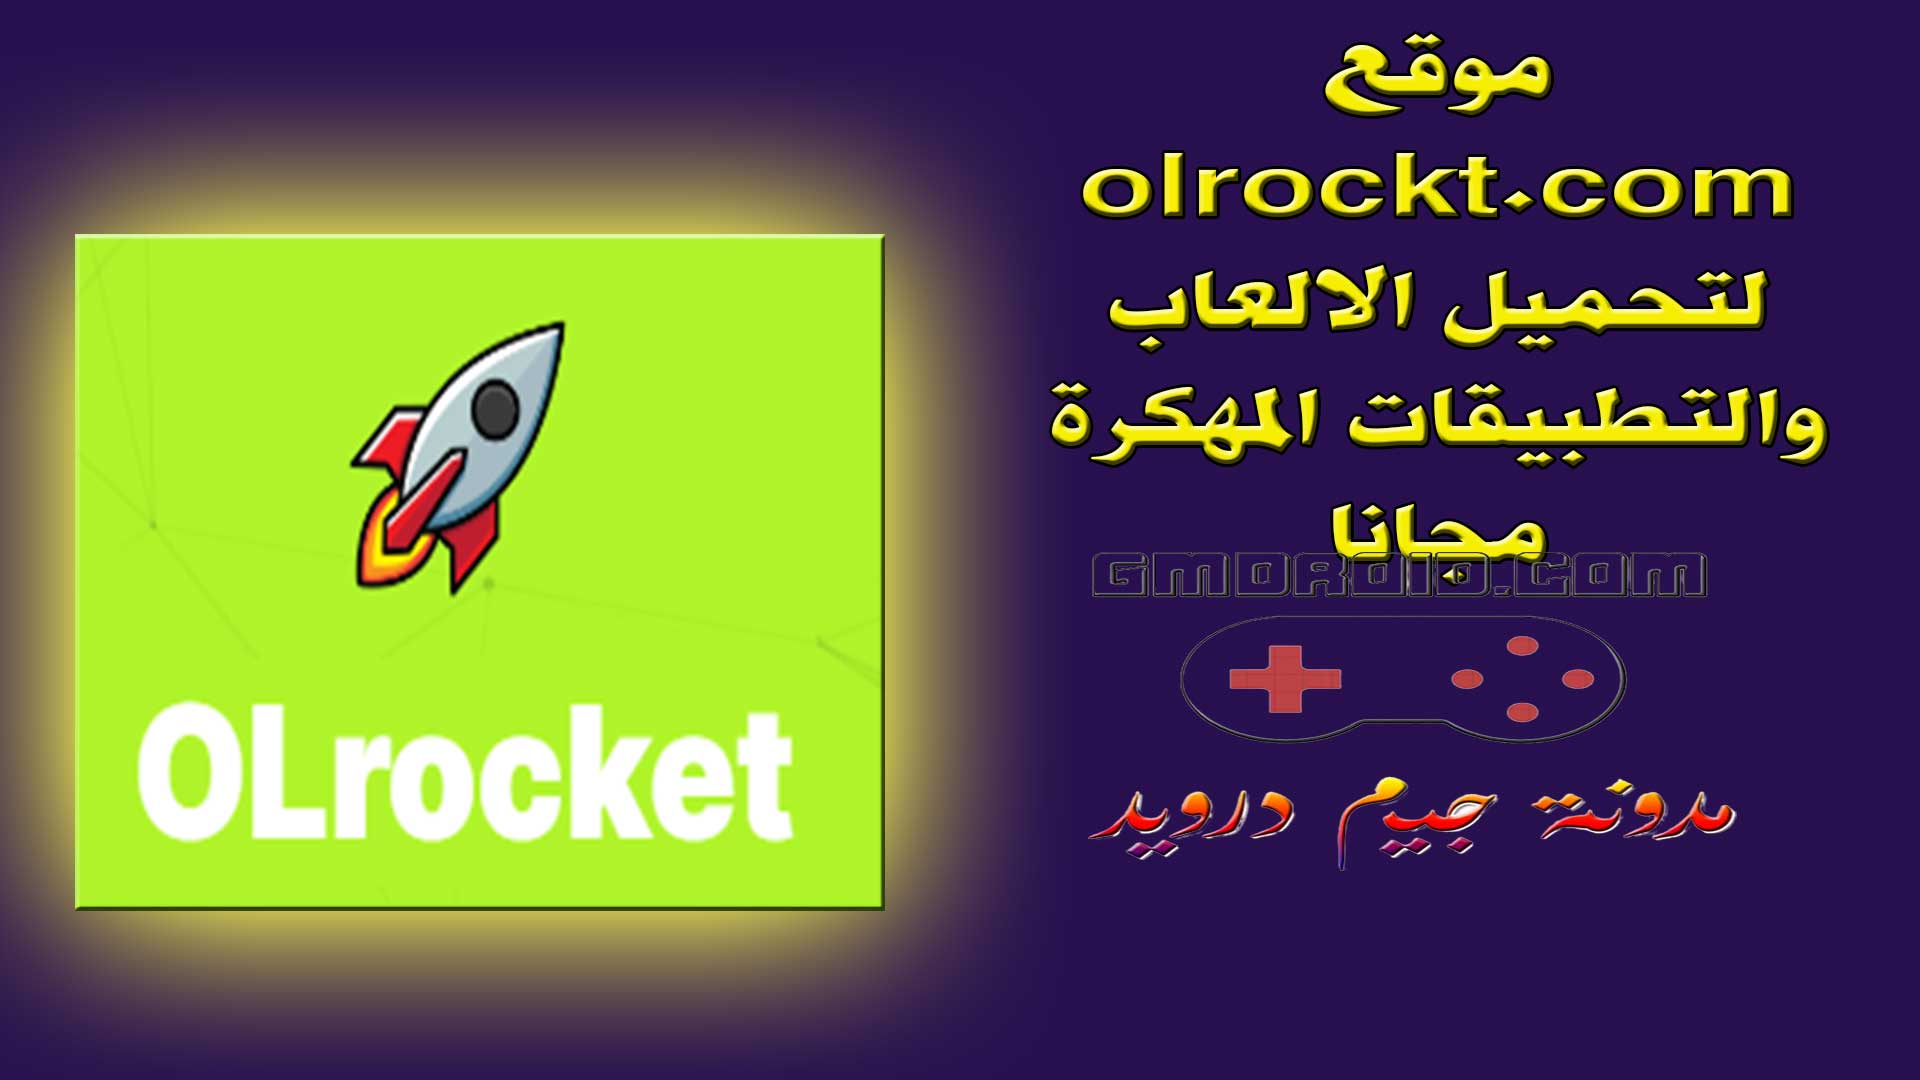 موقع olrockt. com لتحميل الالعاب والتطبيقات المهكرة مجانا